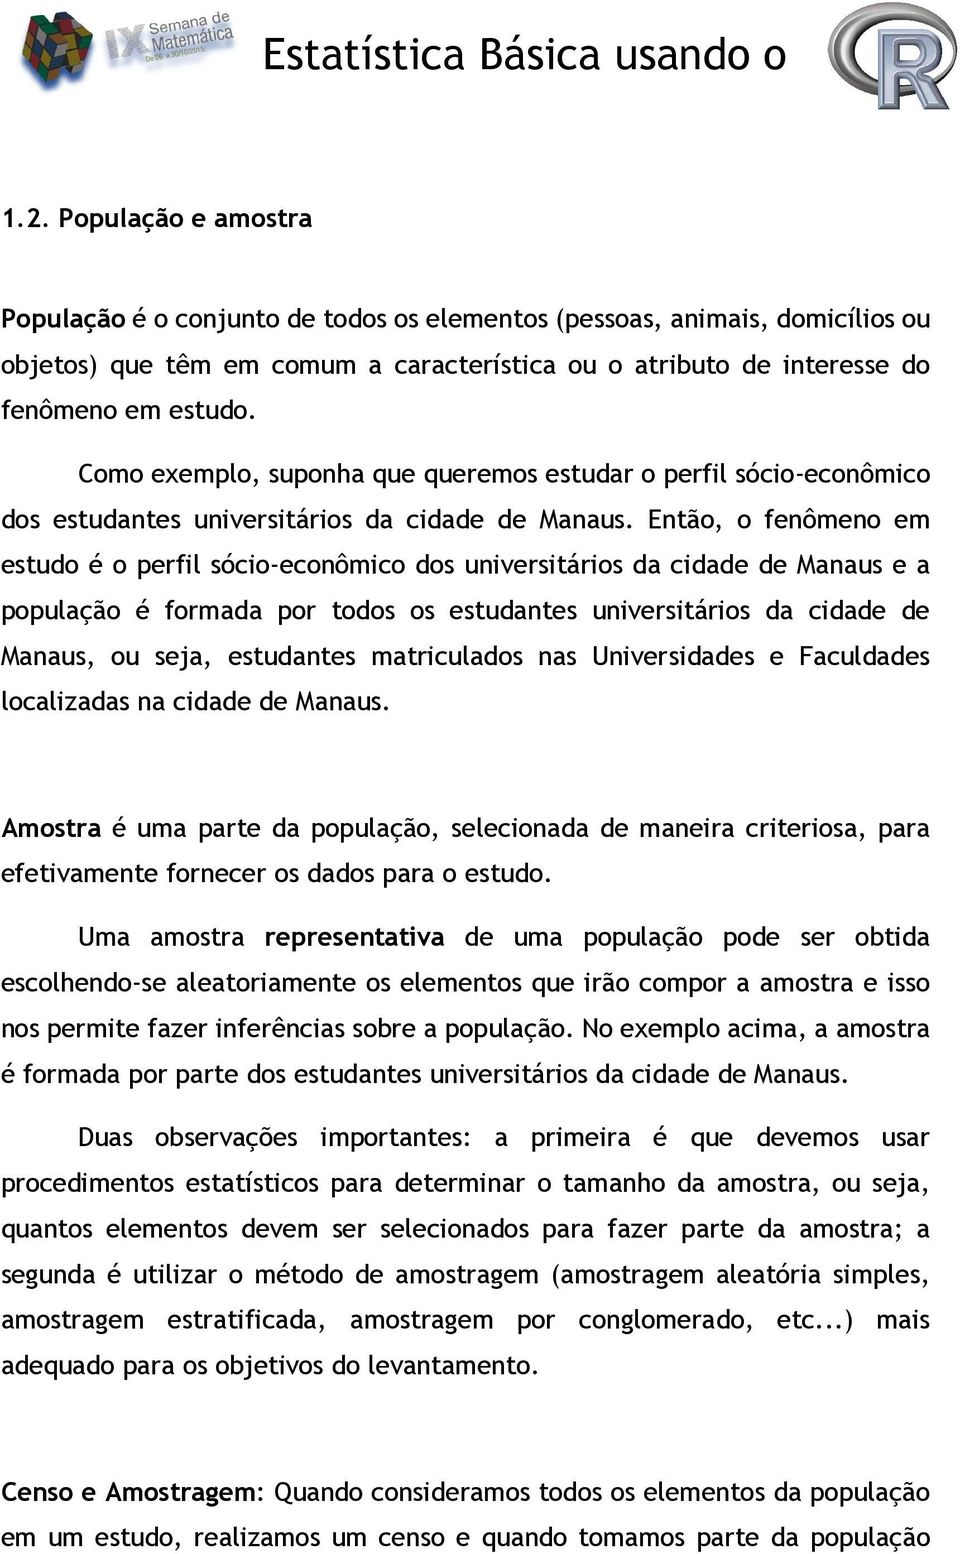 Então, o fenômeno em estudo é o perfil sócio-econômico dos universitários da cidade de Manaus e a população é formada por todos os estudantes universitários da cidade de Manaus, ou seja, estudantes